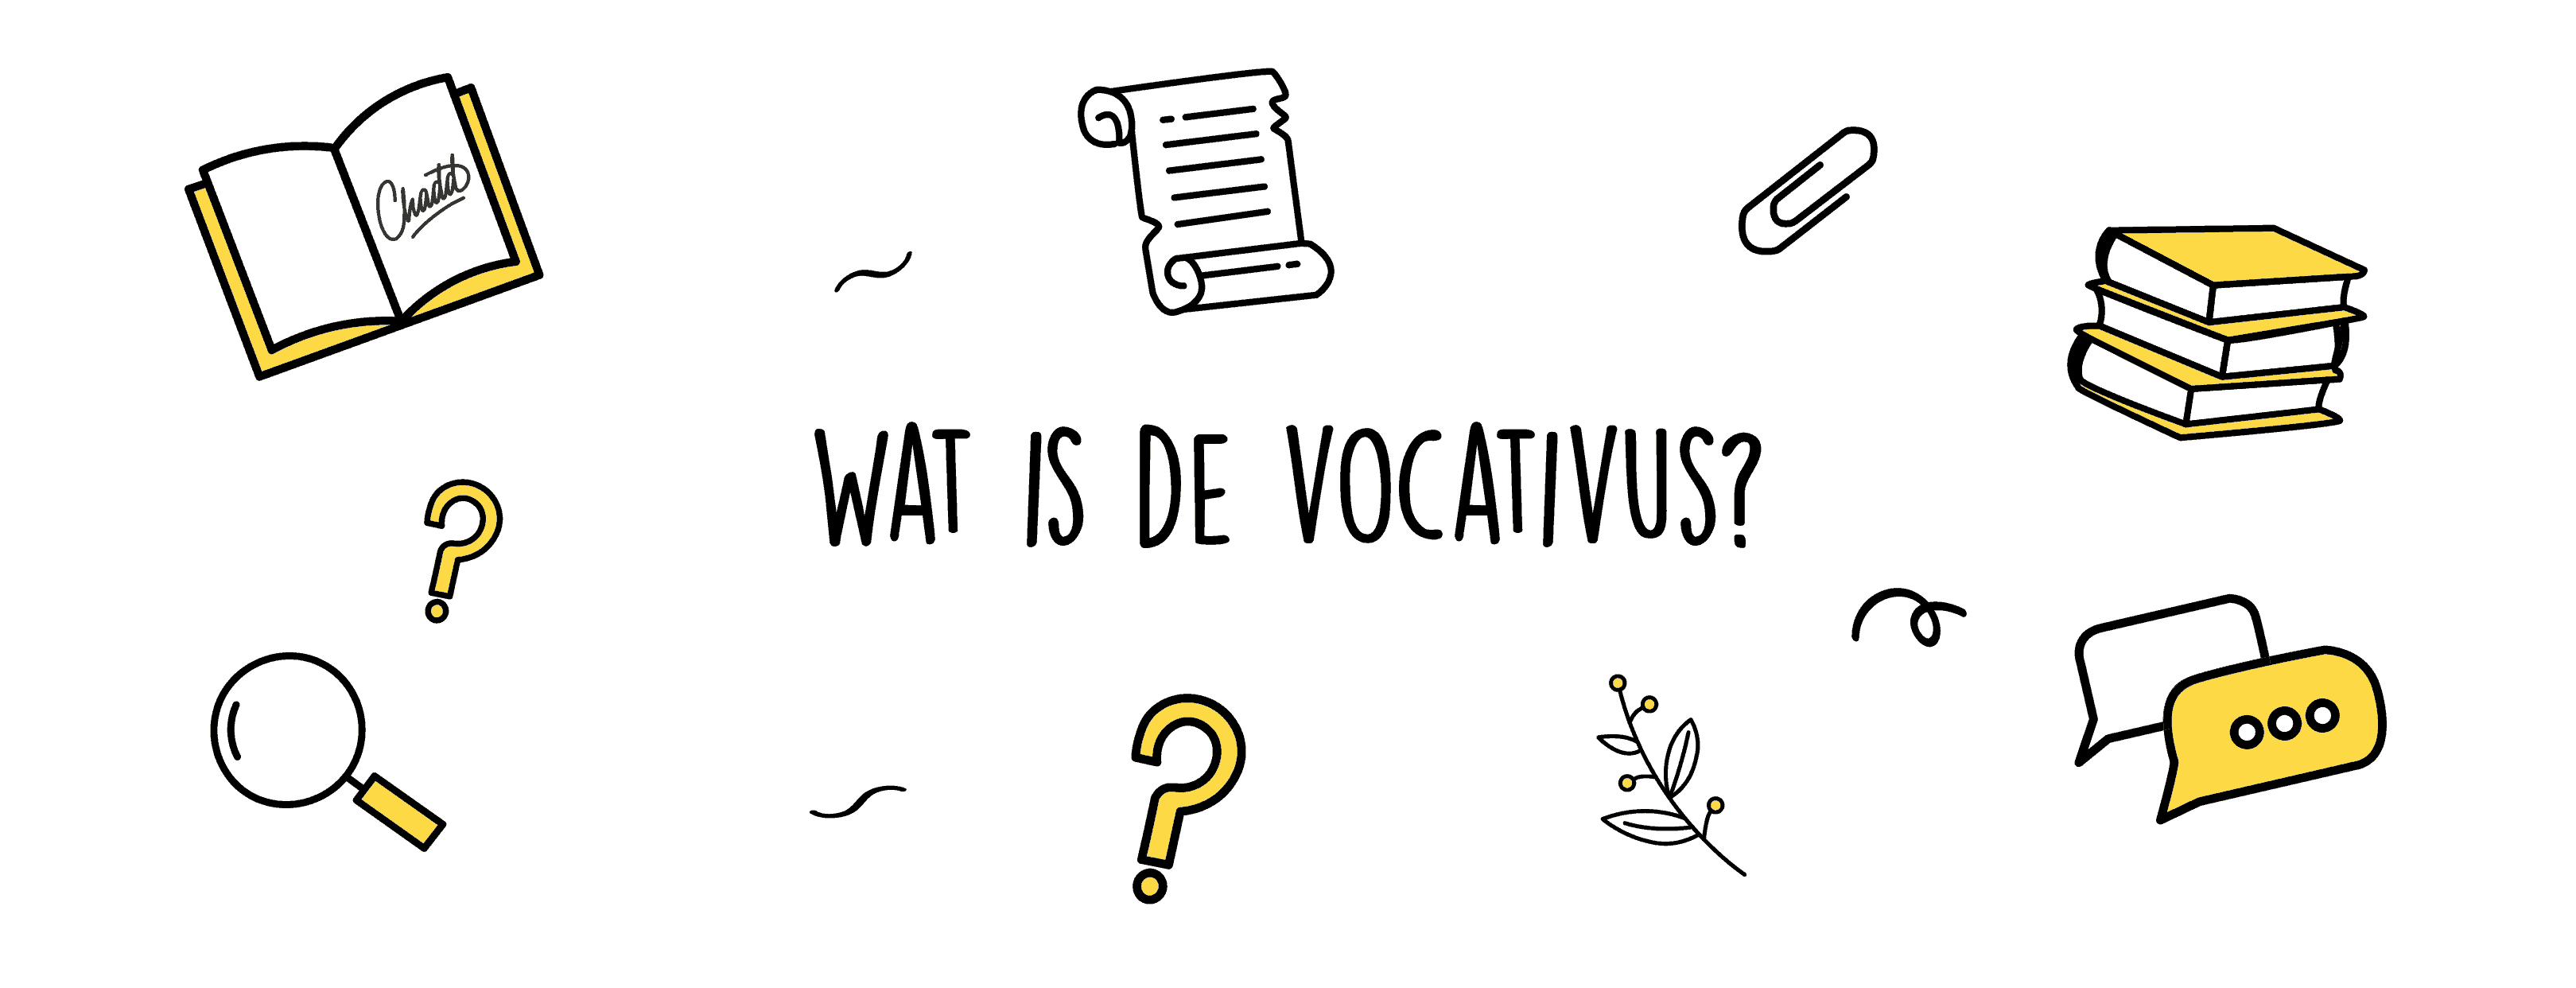 vocativus